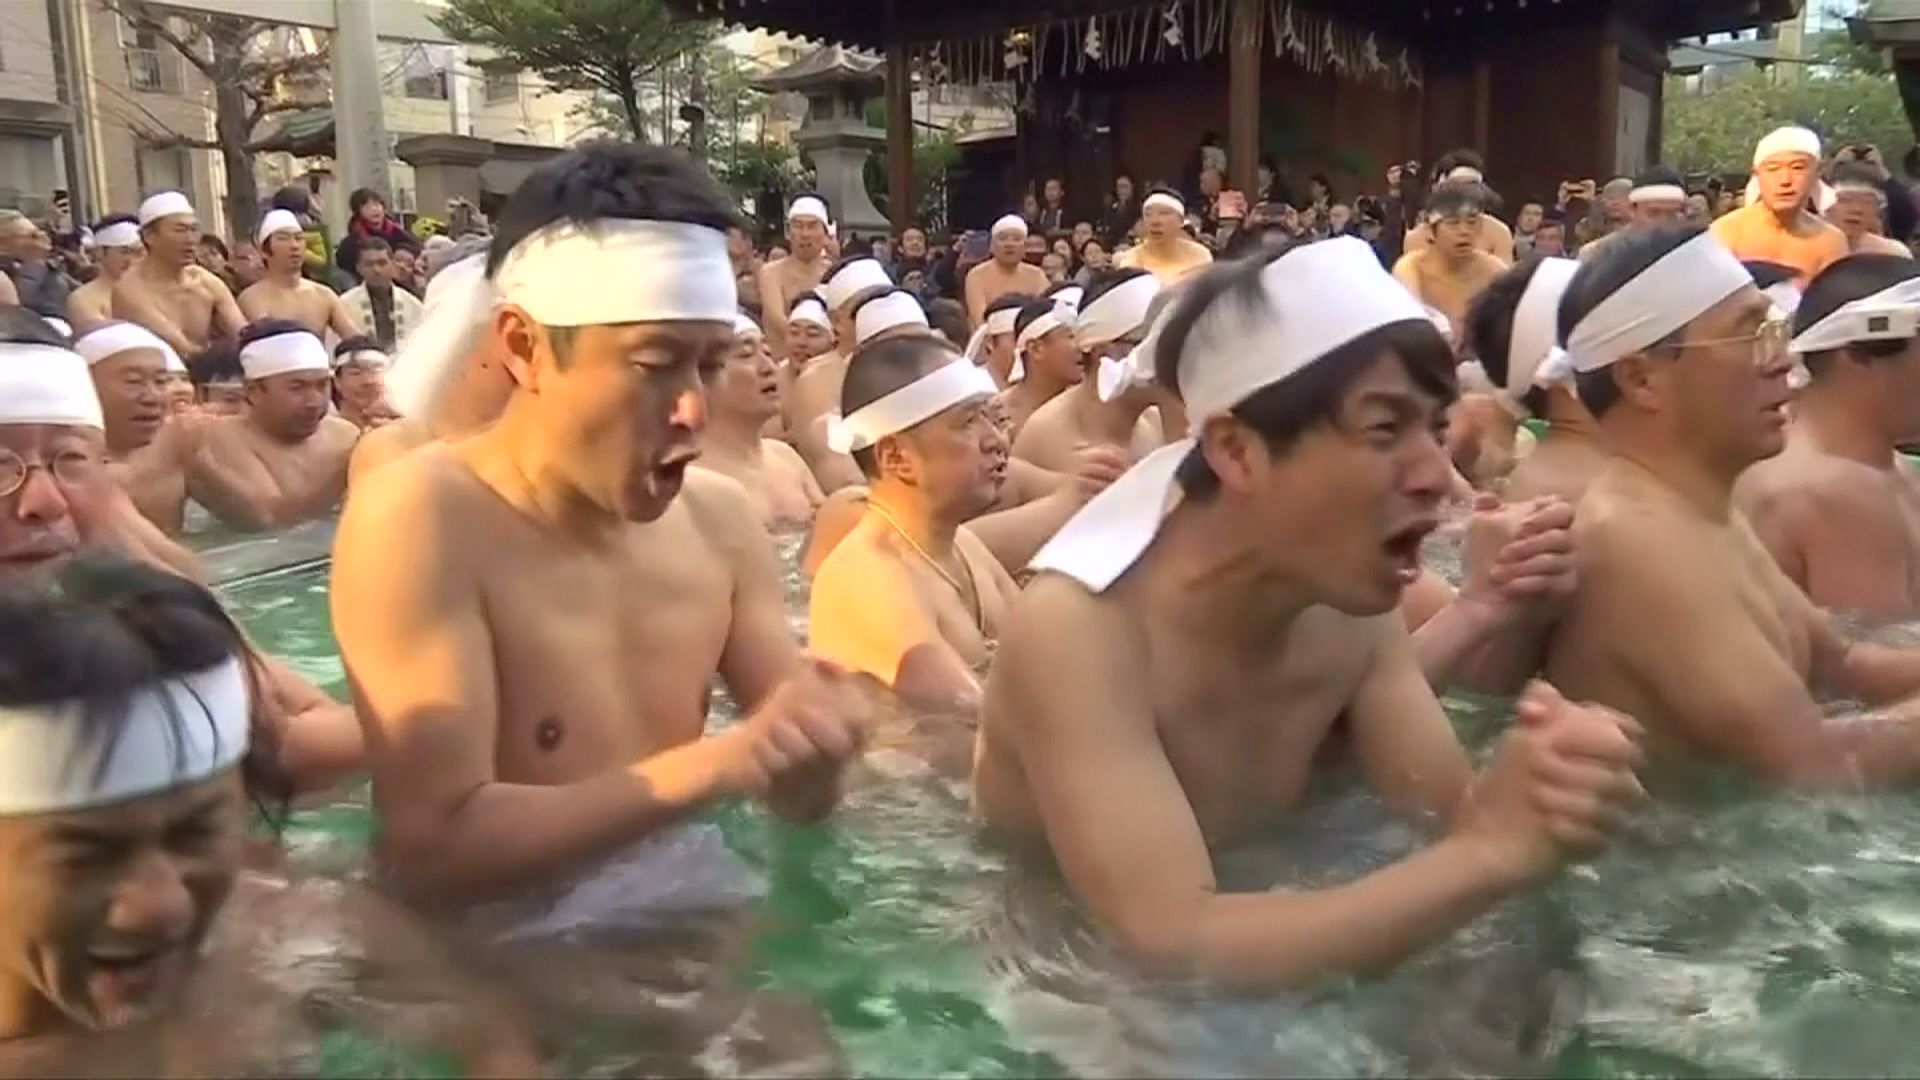 Japon: un bain glacé pour purifier son âme